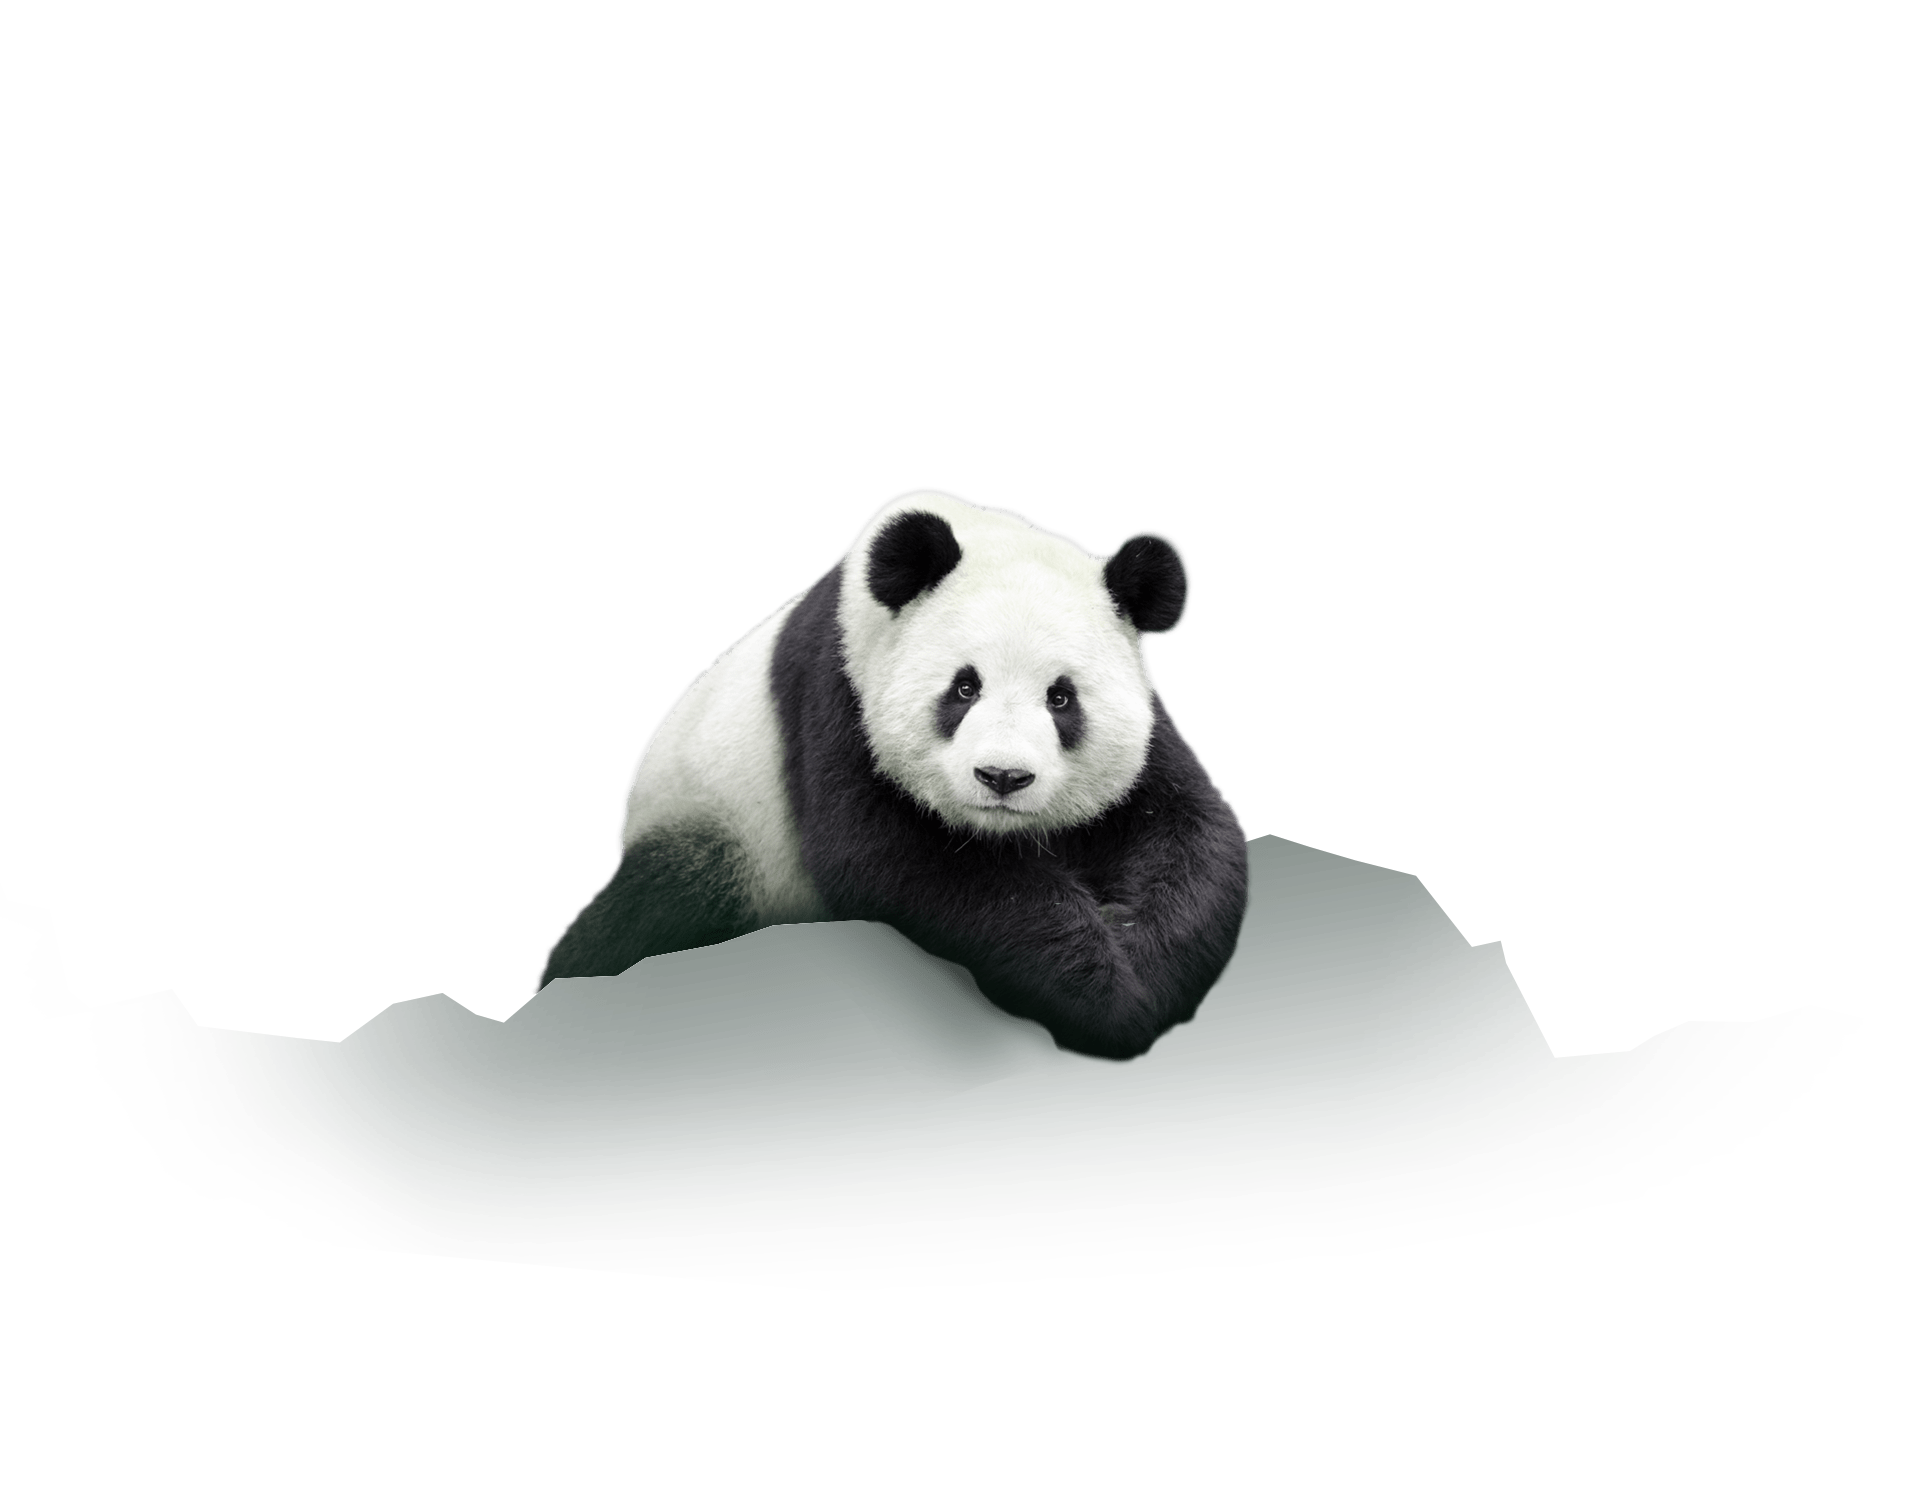 Le panda